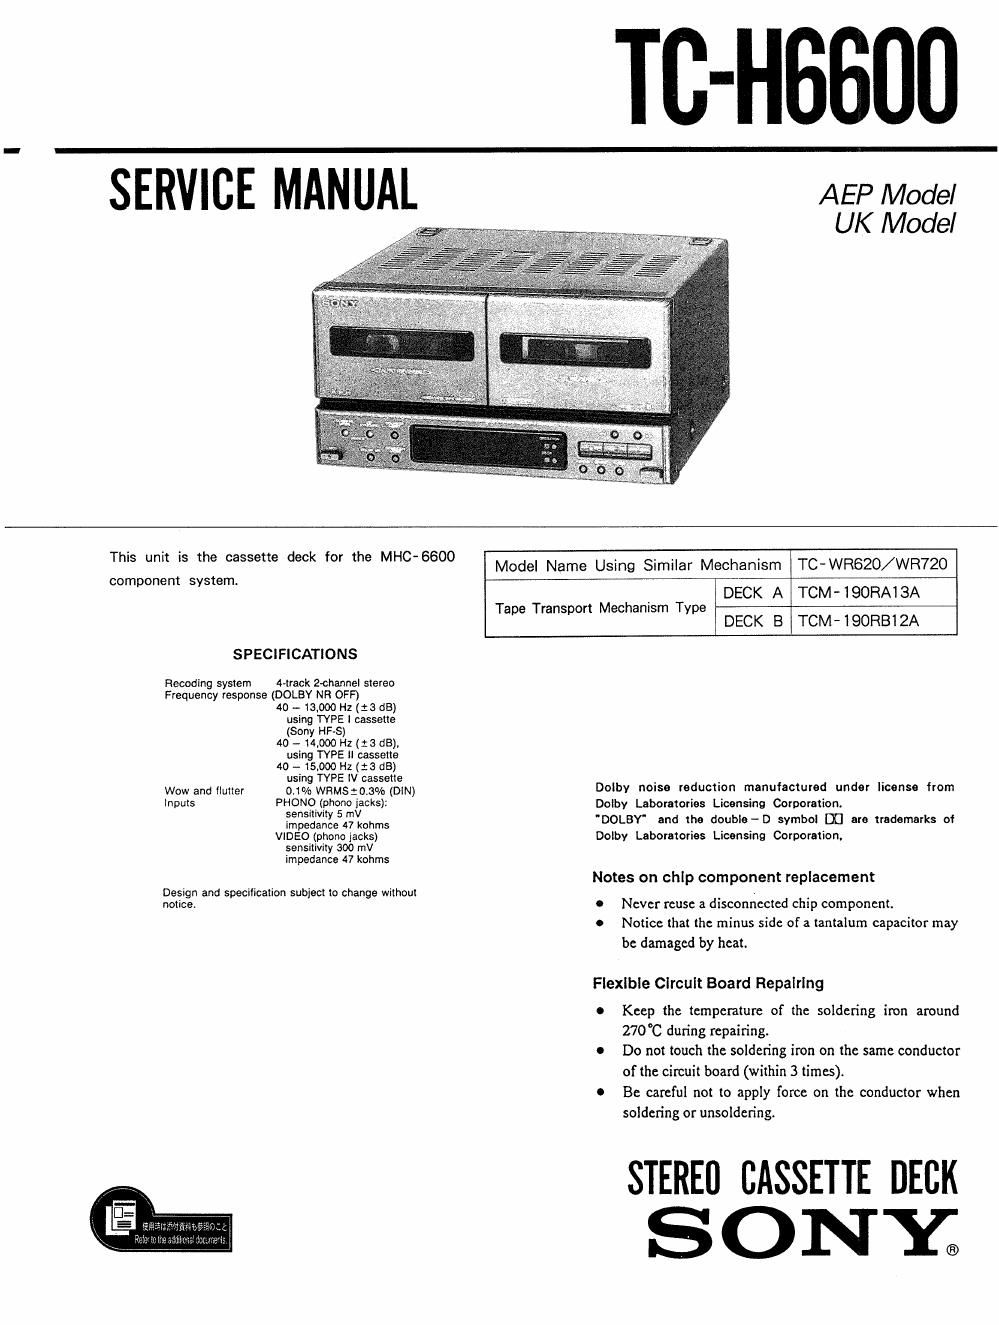 sony tc h 6600 service manual